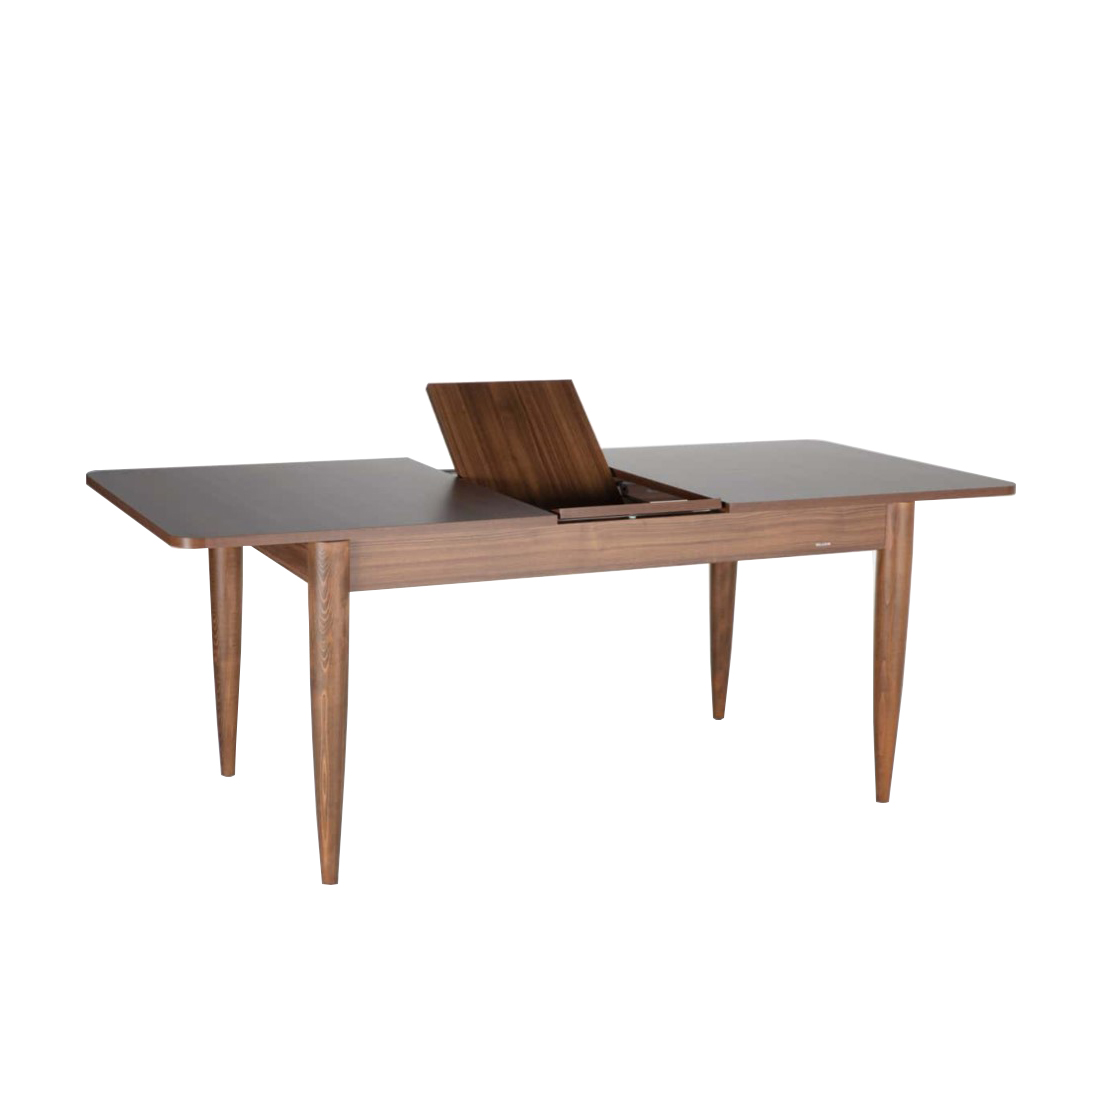 Стол обеденный Bellona Loren, прямоугольный раздвижной, размер 164(204)х90х77 см (LORE-14)LORE-14